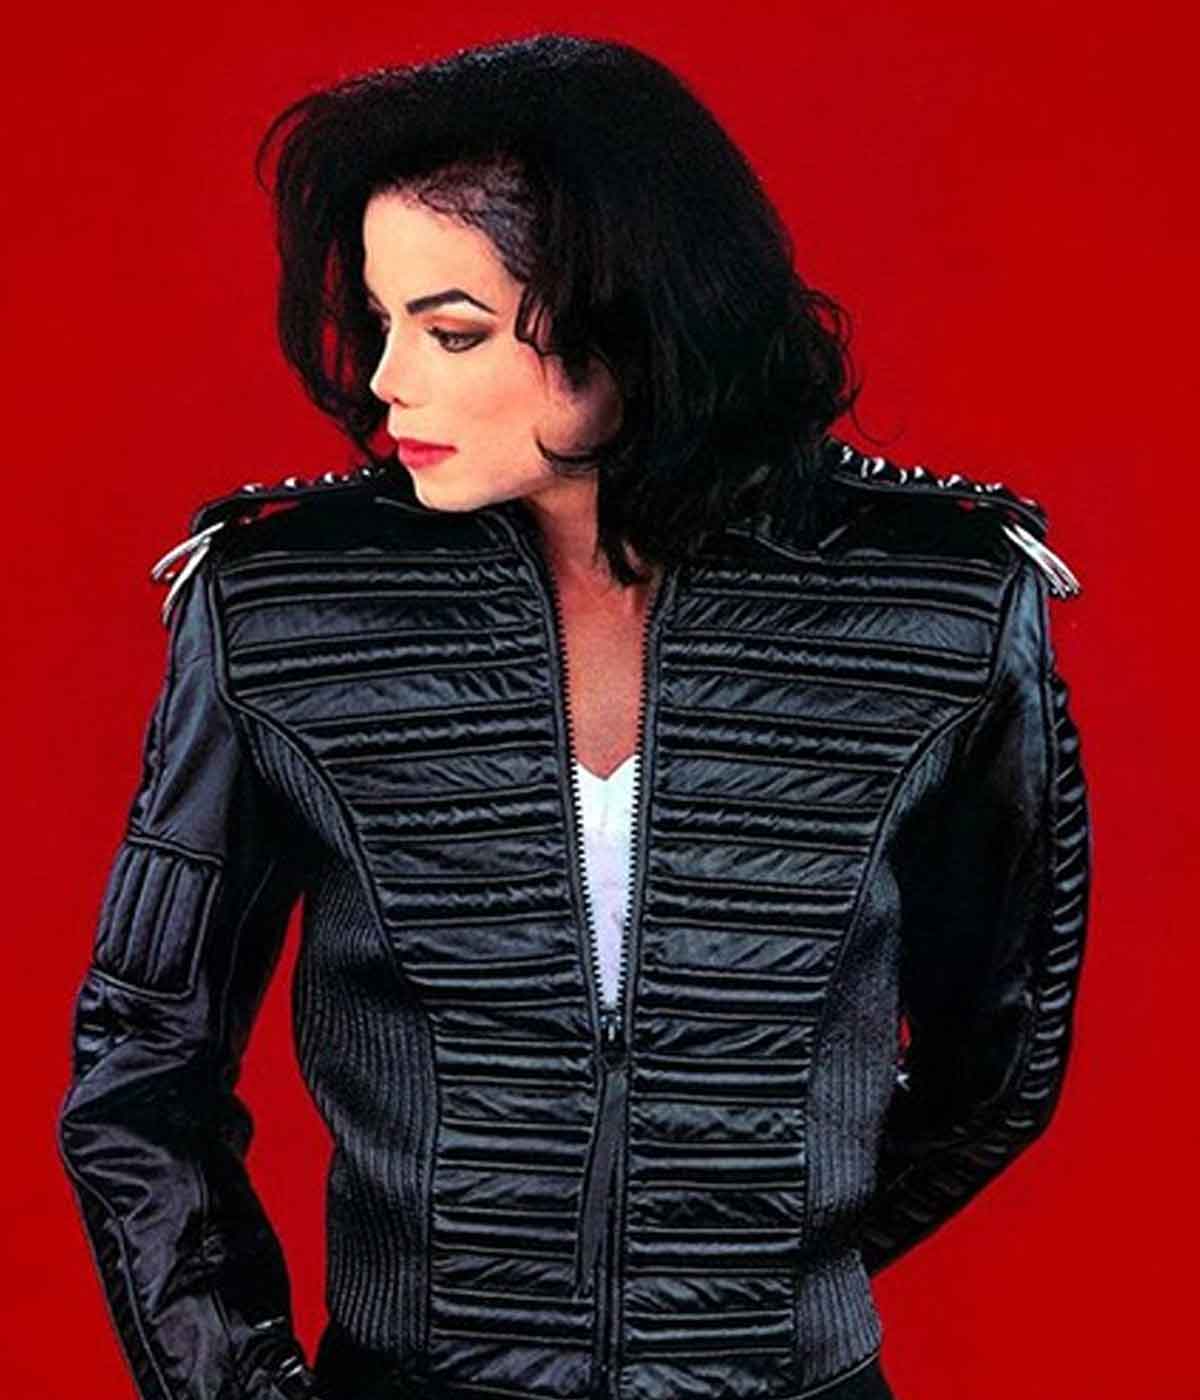 My Favorite Black Leather Jacket - Fashion Jackson